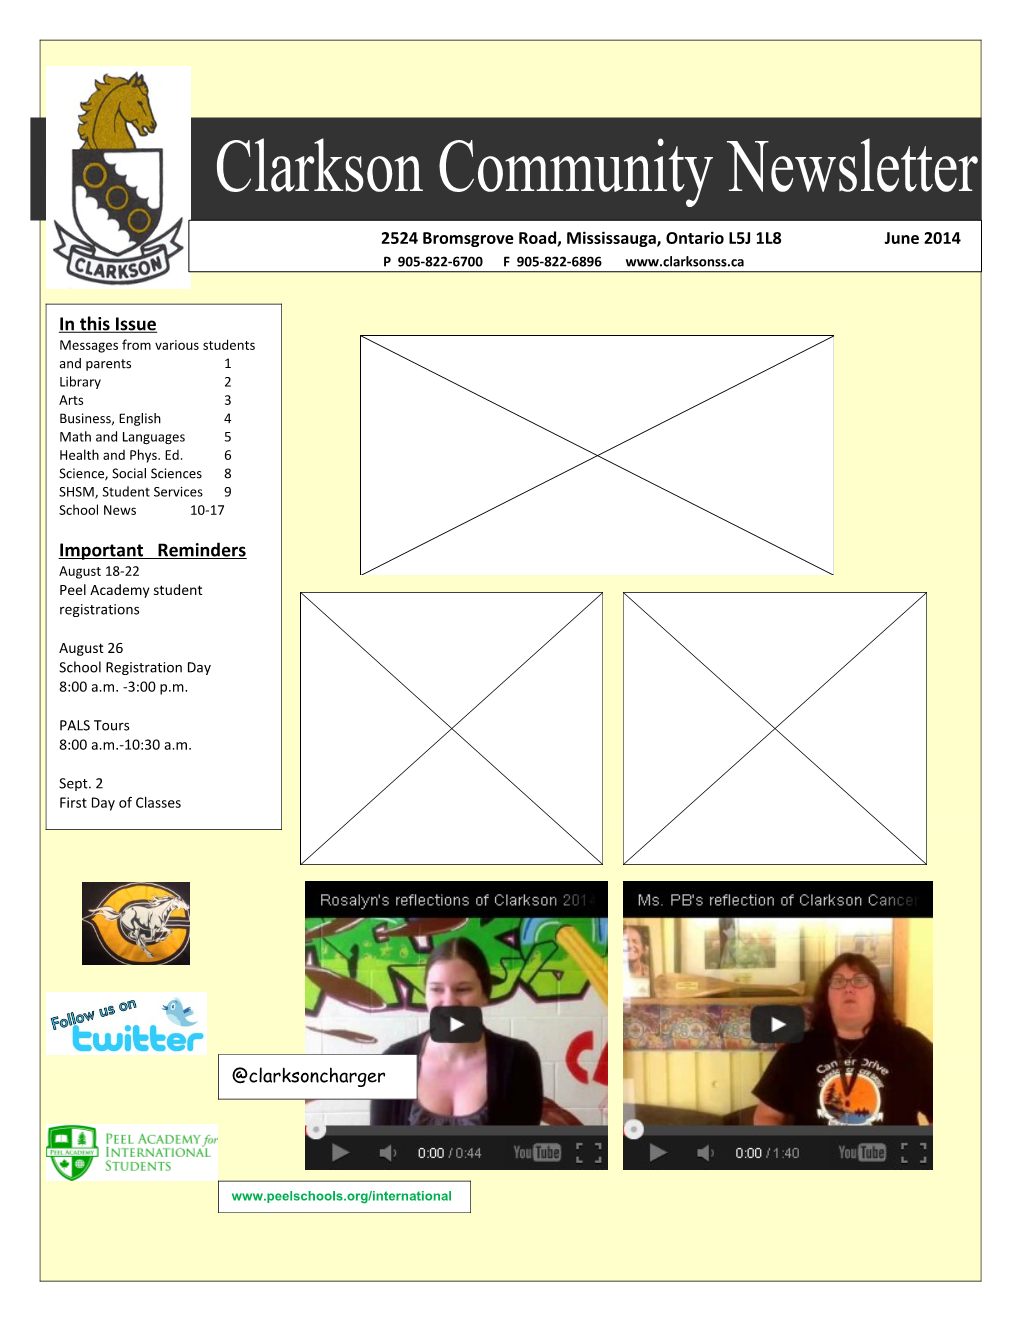 The Clarkson Community Newsletter